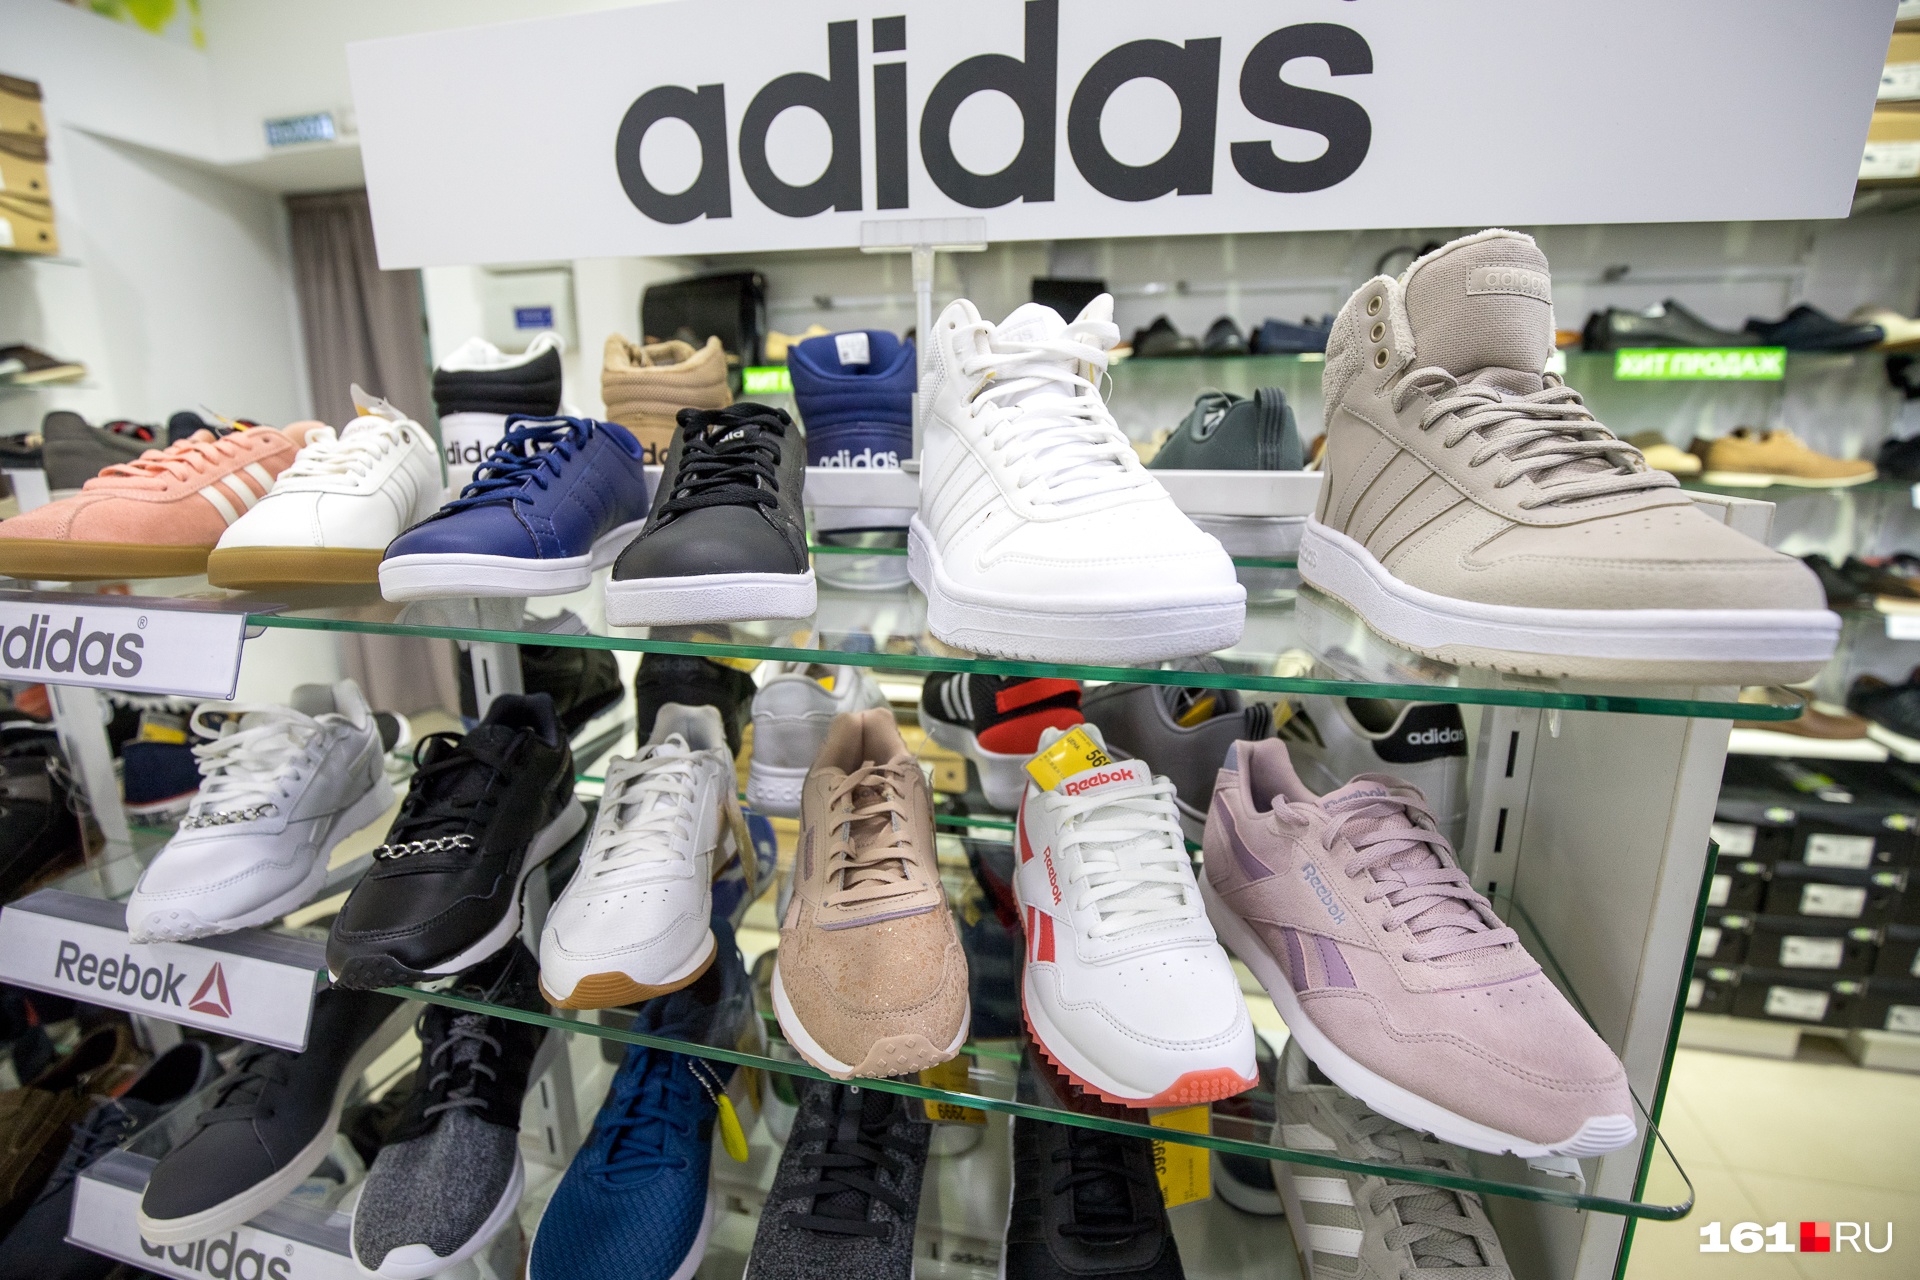 Раньше в России найти «родные» кроссовки от мировых брендов было проще